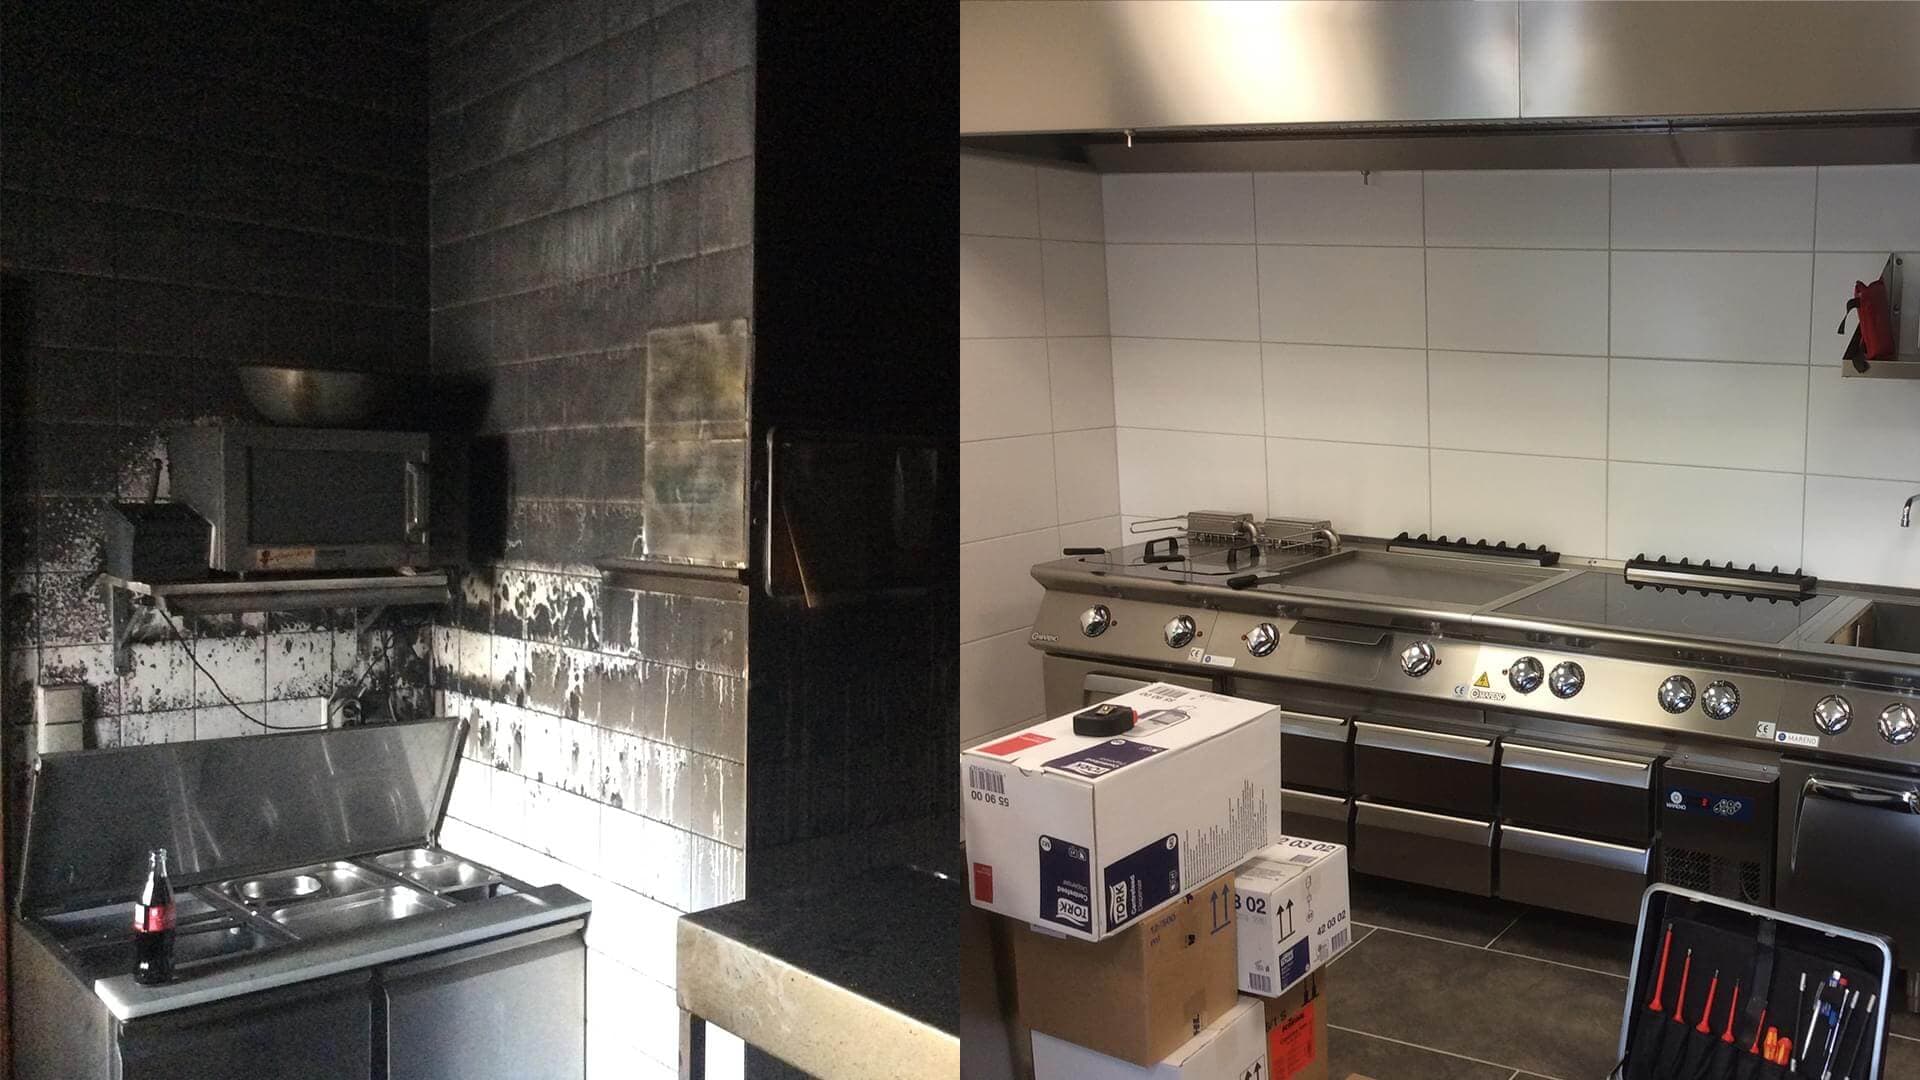 Brandschadensanierung Küche Vorher / Nachher – SMS GROUP | Sanieren | Renovieren